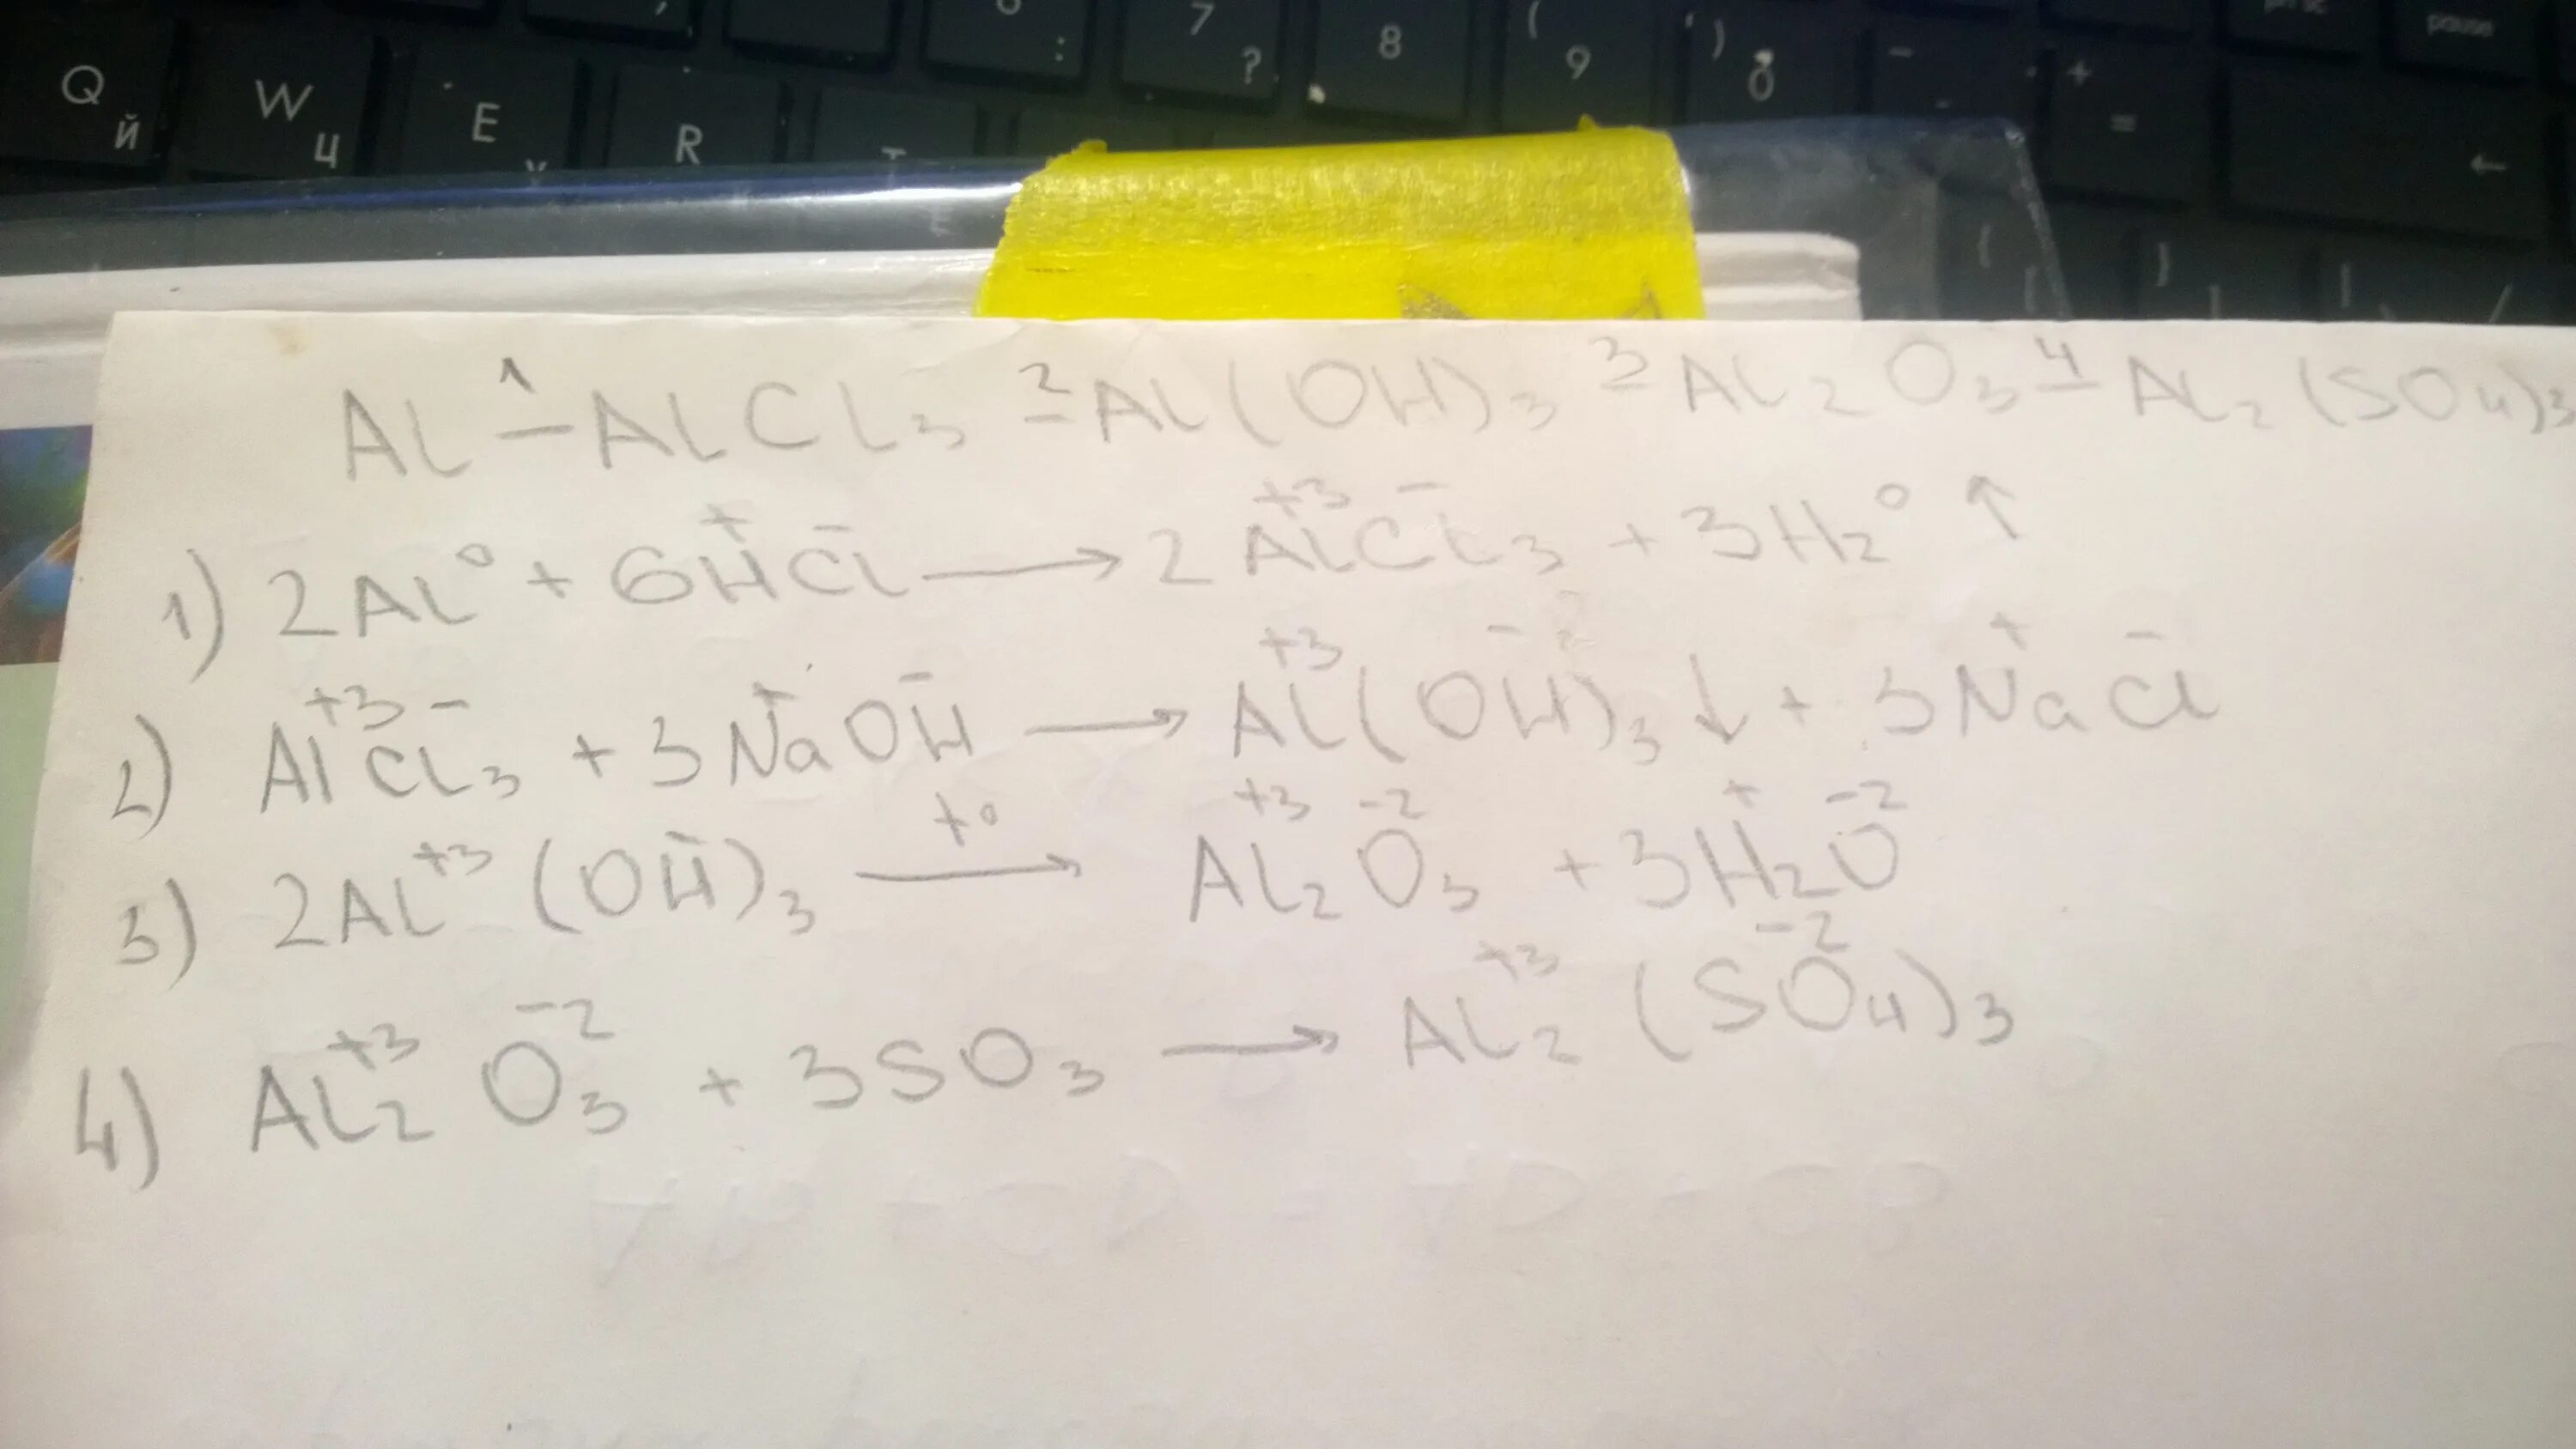 Al2 so4 3 bao. Al2 so4 3 alcl3 цепочка превращений. Al2o3 al2 so4 3 al Oh 3 al2o3 уравнение. Al al2o3 alcl3 al Oh 3. Al2o3→ al → alcl3 → al2(so4)3 → x → kalo2 → k[al(нo)4].